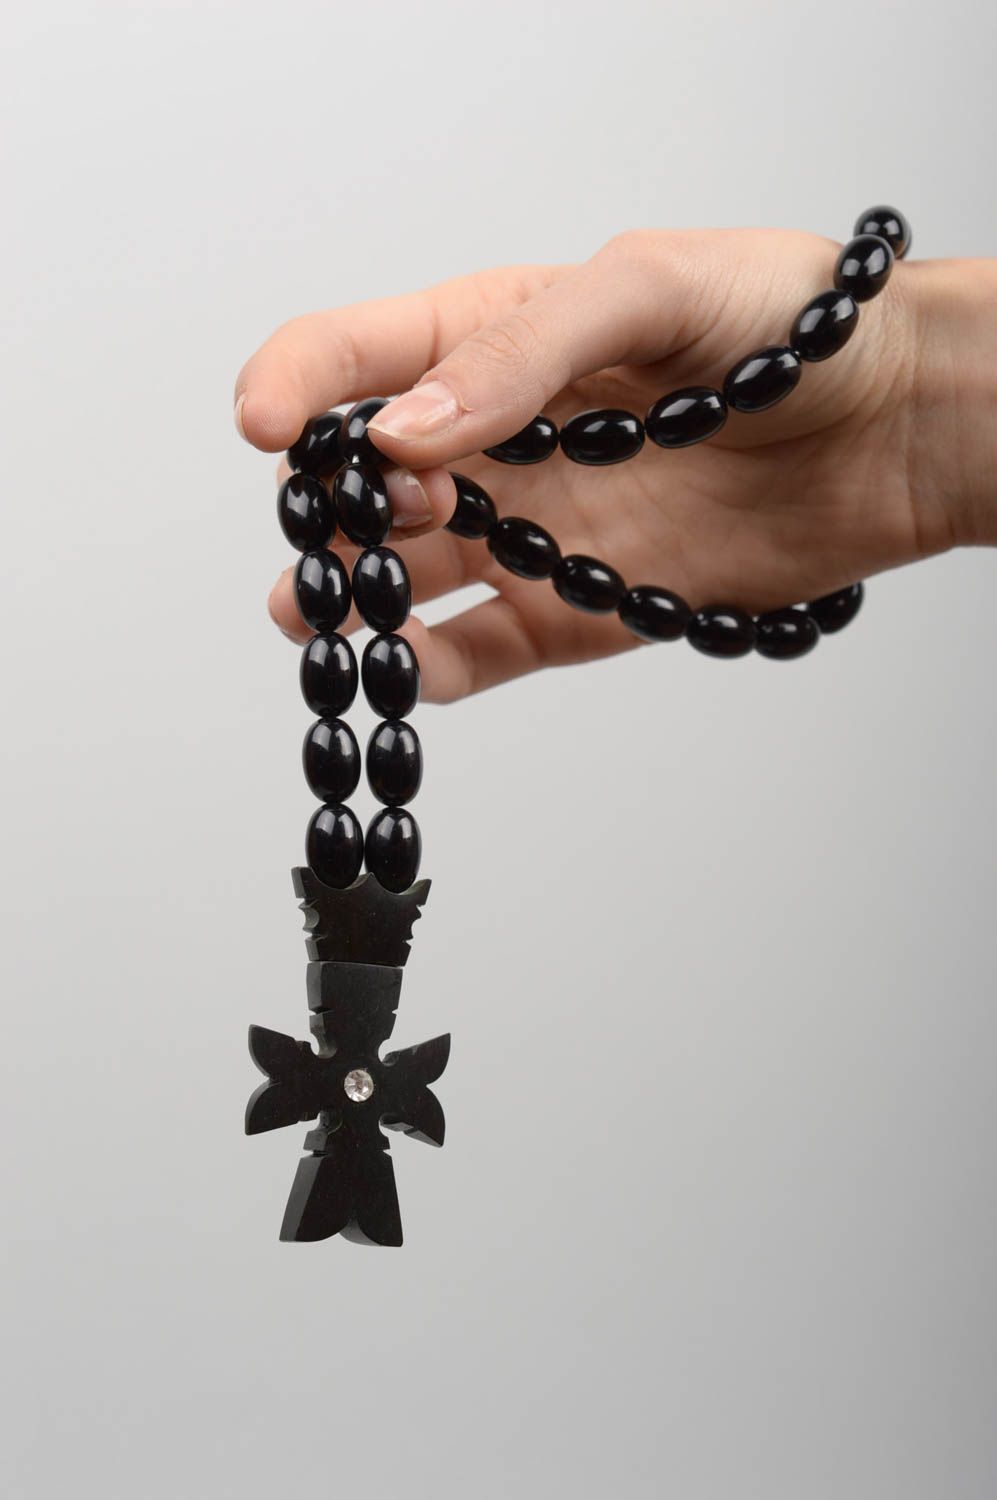 Четки ручной работы аксессуар для мужчин четки для молитвы православные четки  фото 5